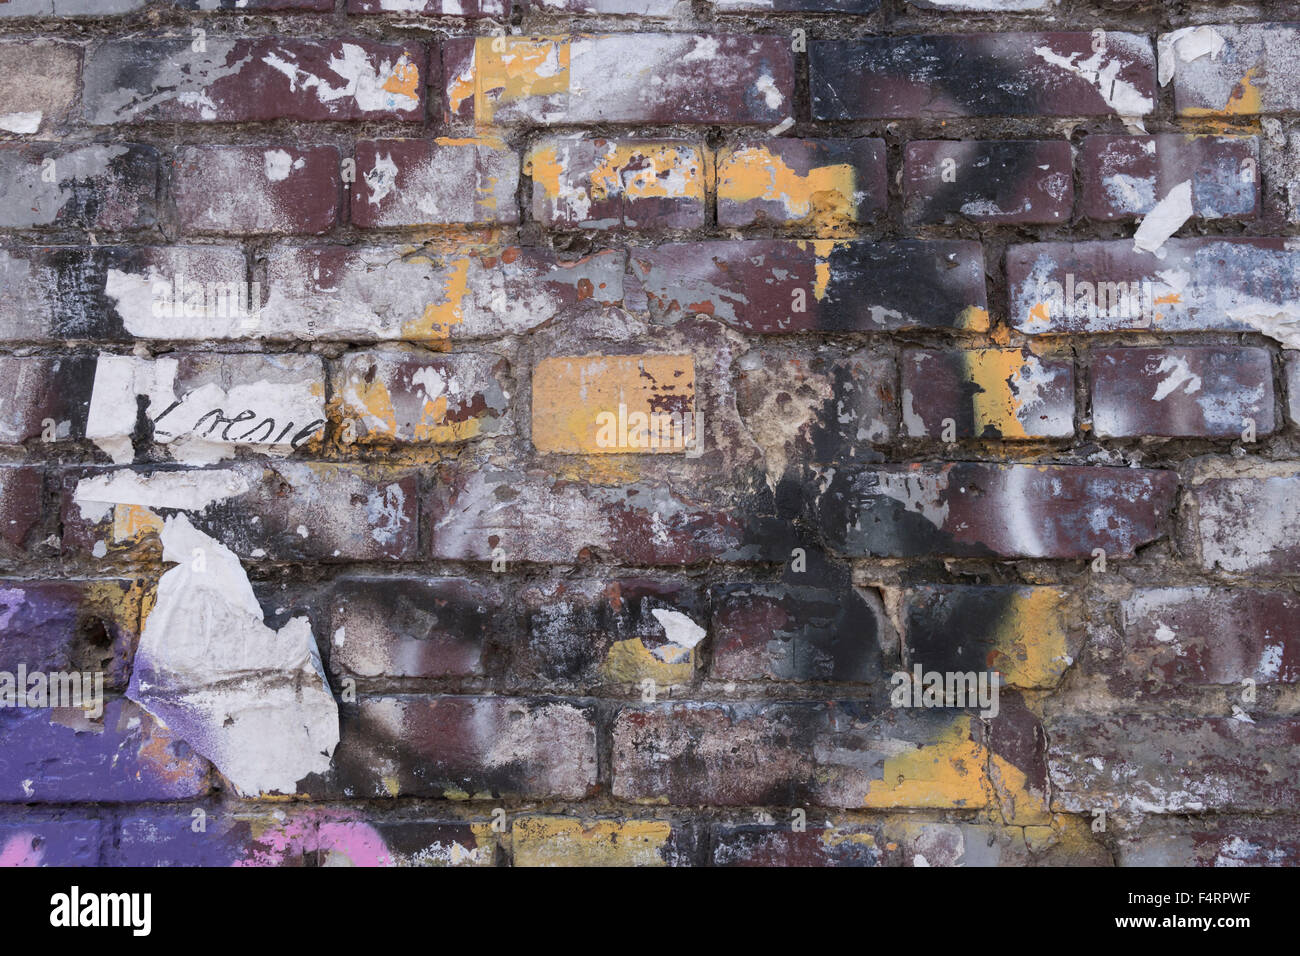 Miserable muro en Berlín Friedrichshain Foto de stock